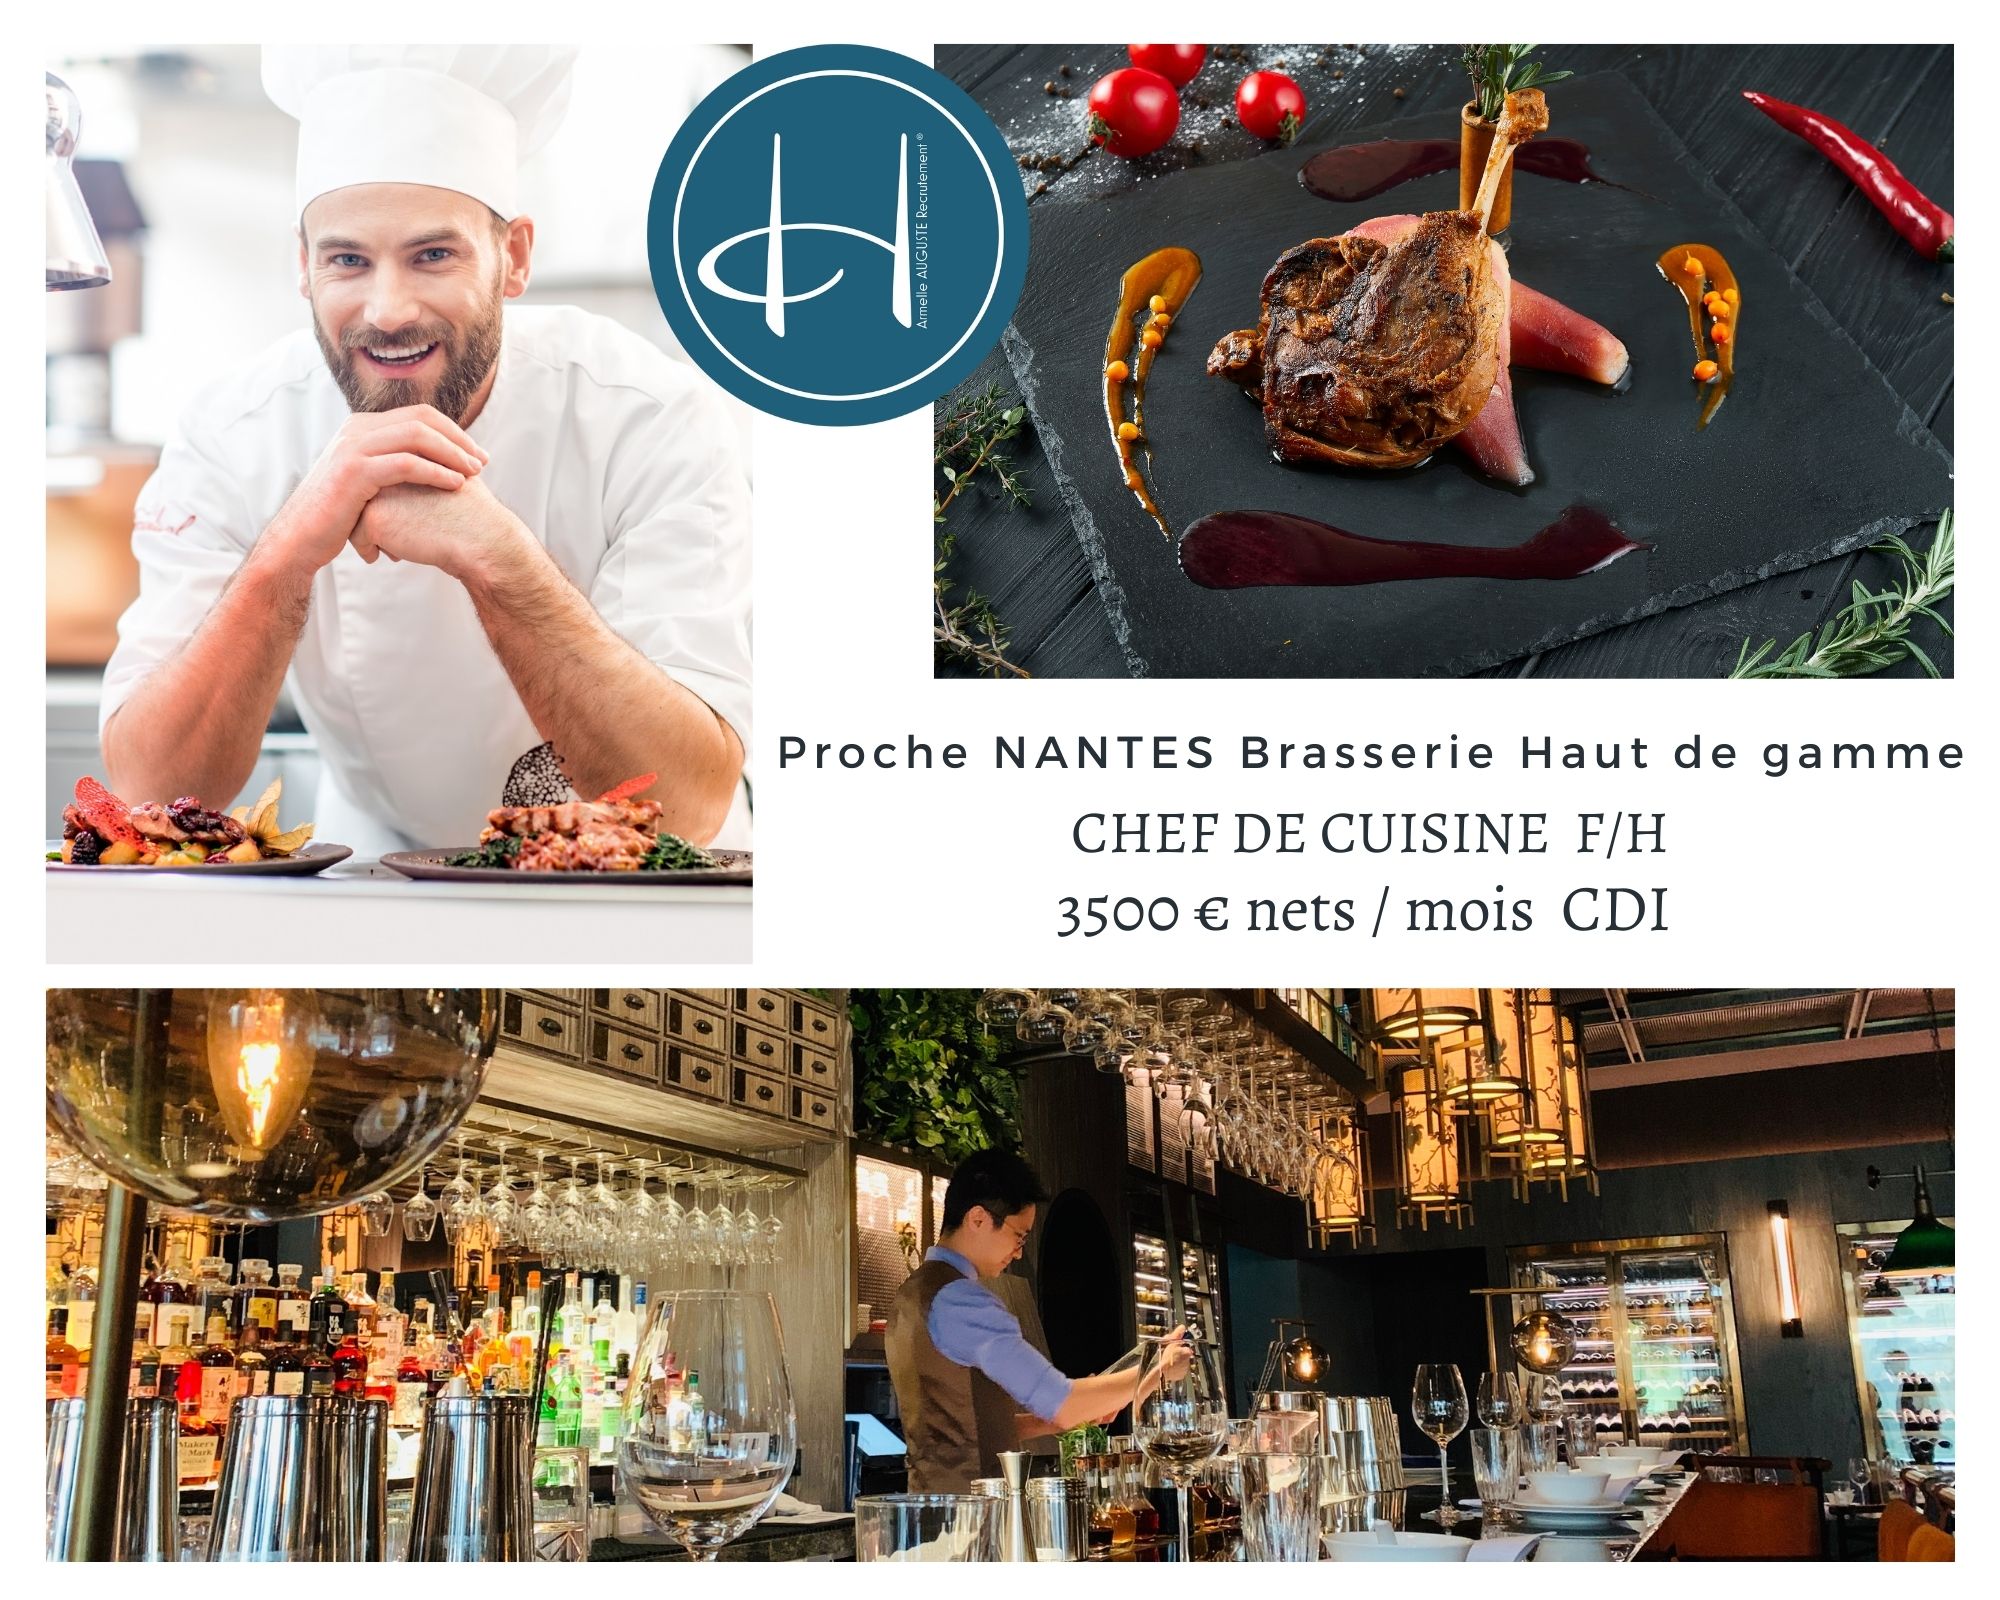 Recrutement: Chef de cuisine brasserie haut de gamme Nantes F/H chez Armelle AUGUSTE Recrutement® à Nantes